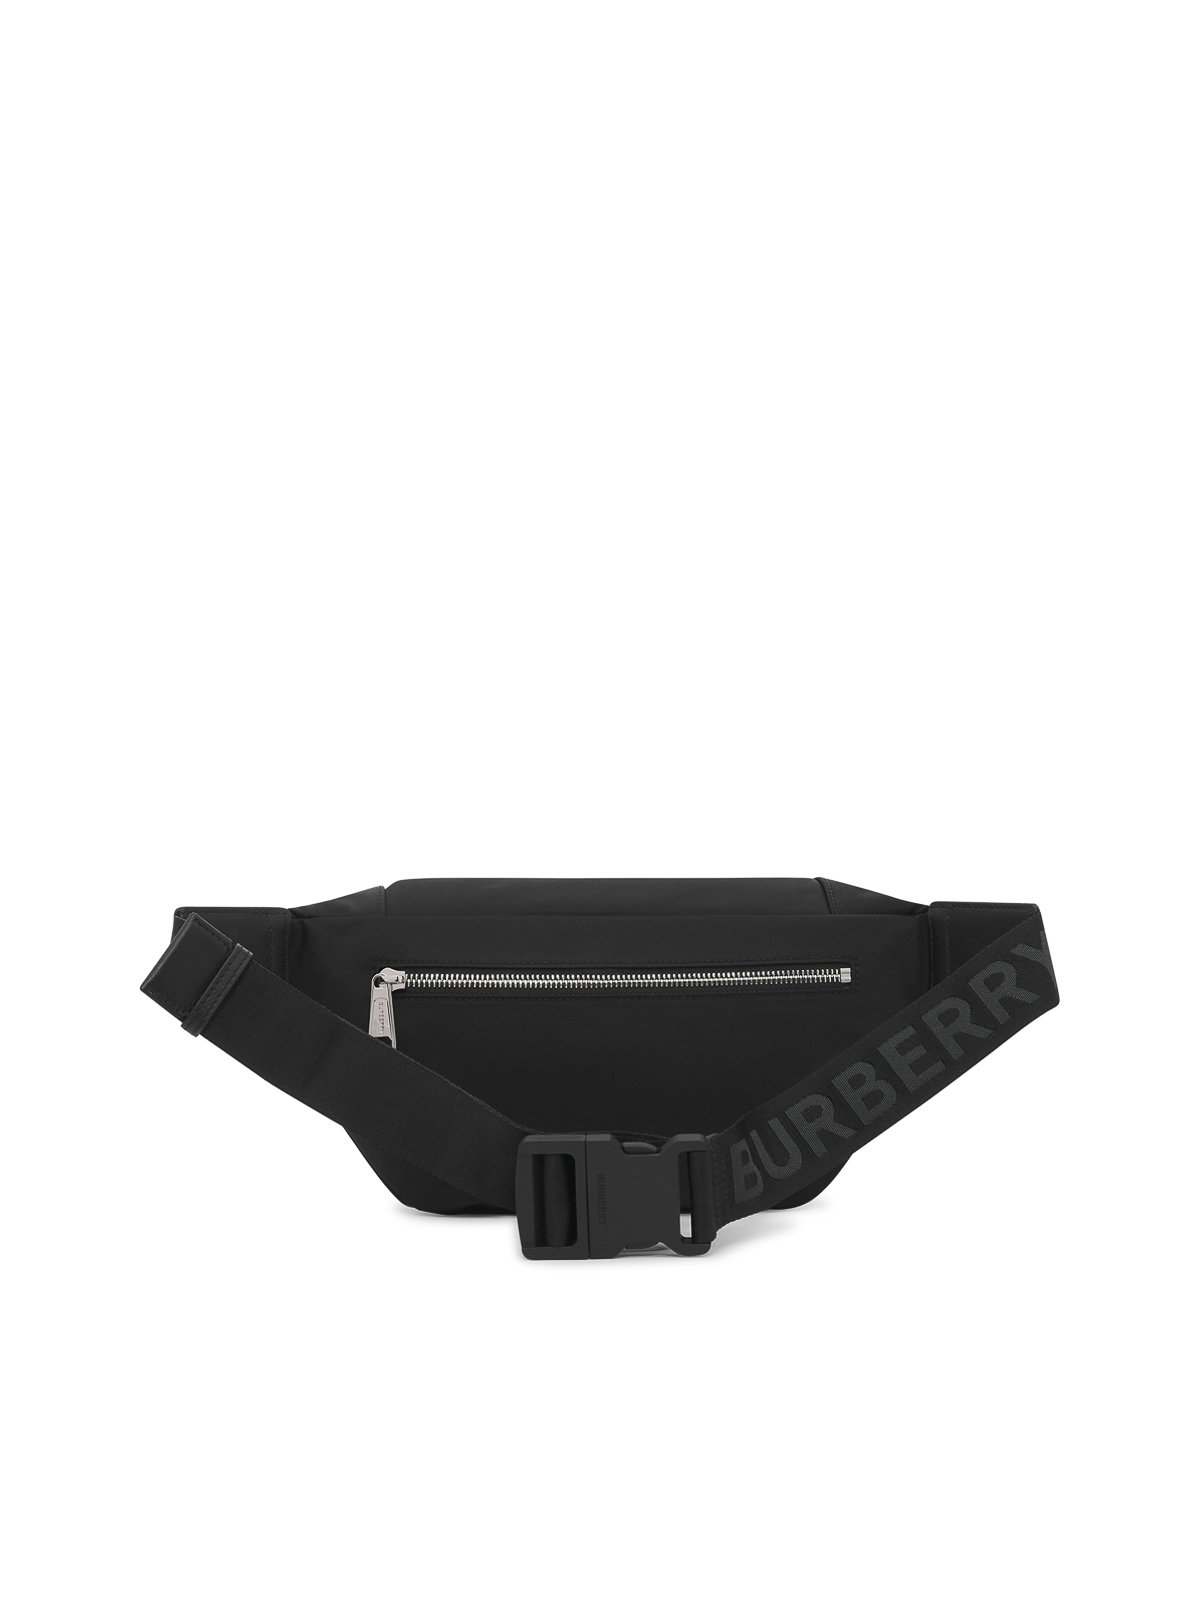 Shop Burberry Belt Bag In Black